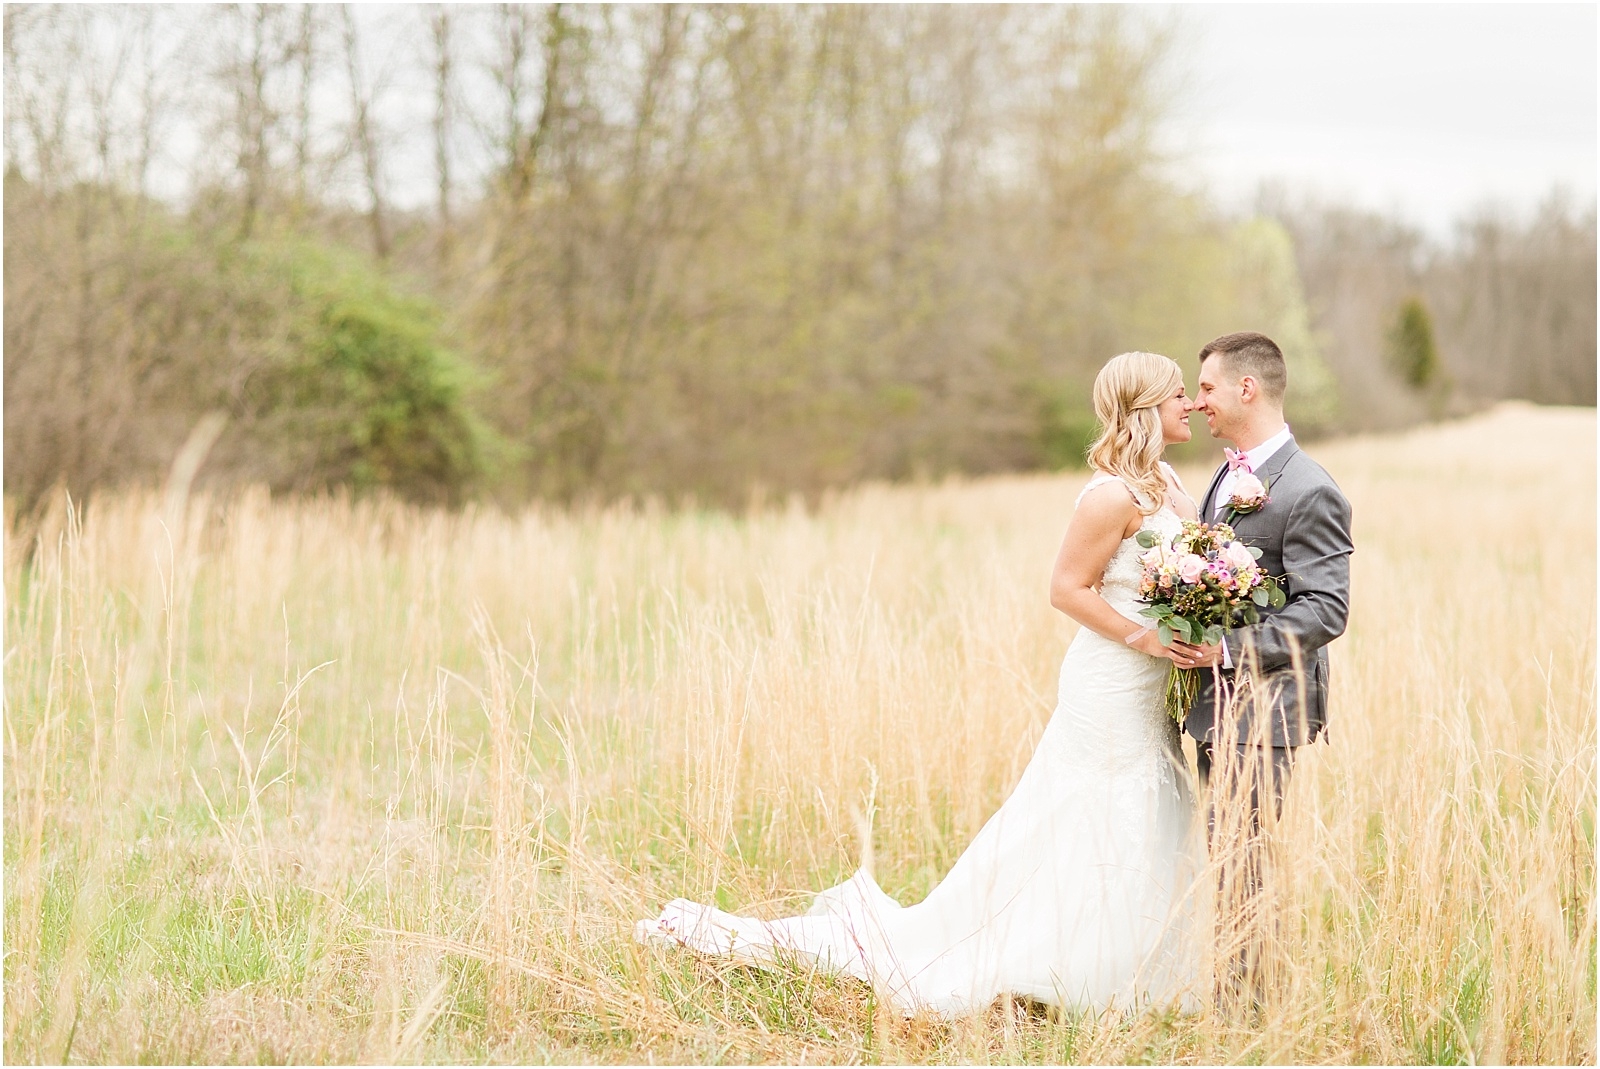 052Kylie and Darren | Bret and Brandie Photography | Evansville Intimate Wedding.jpg